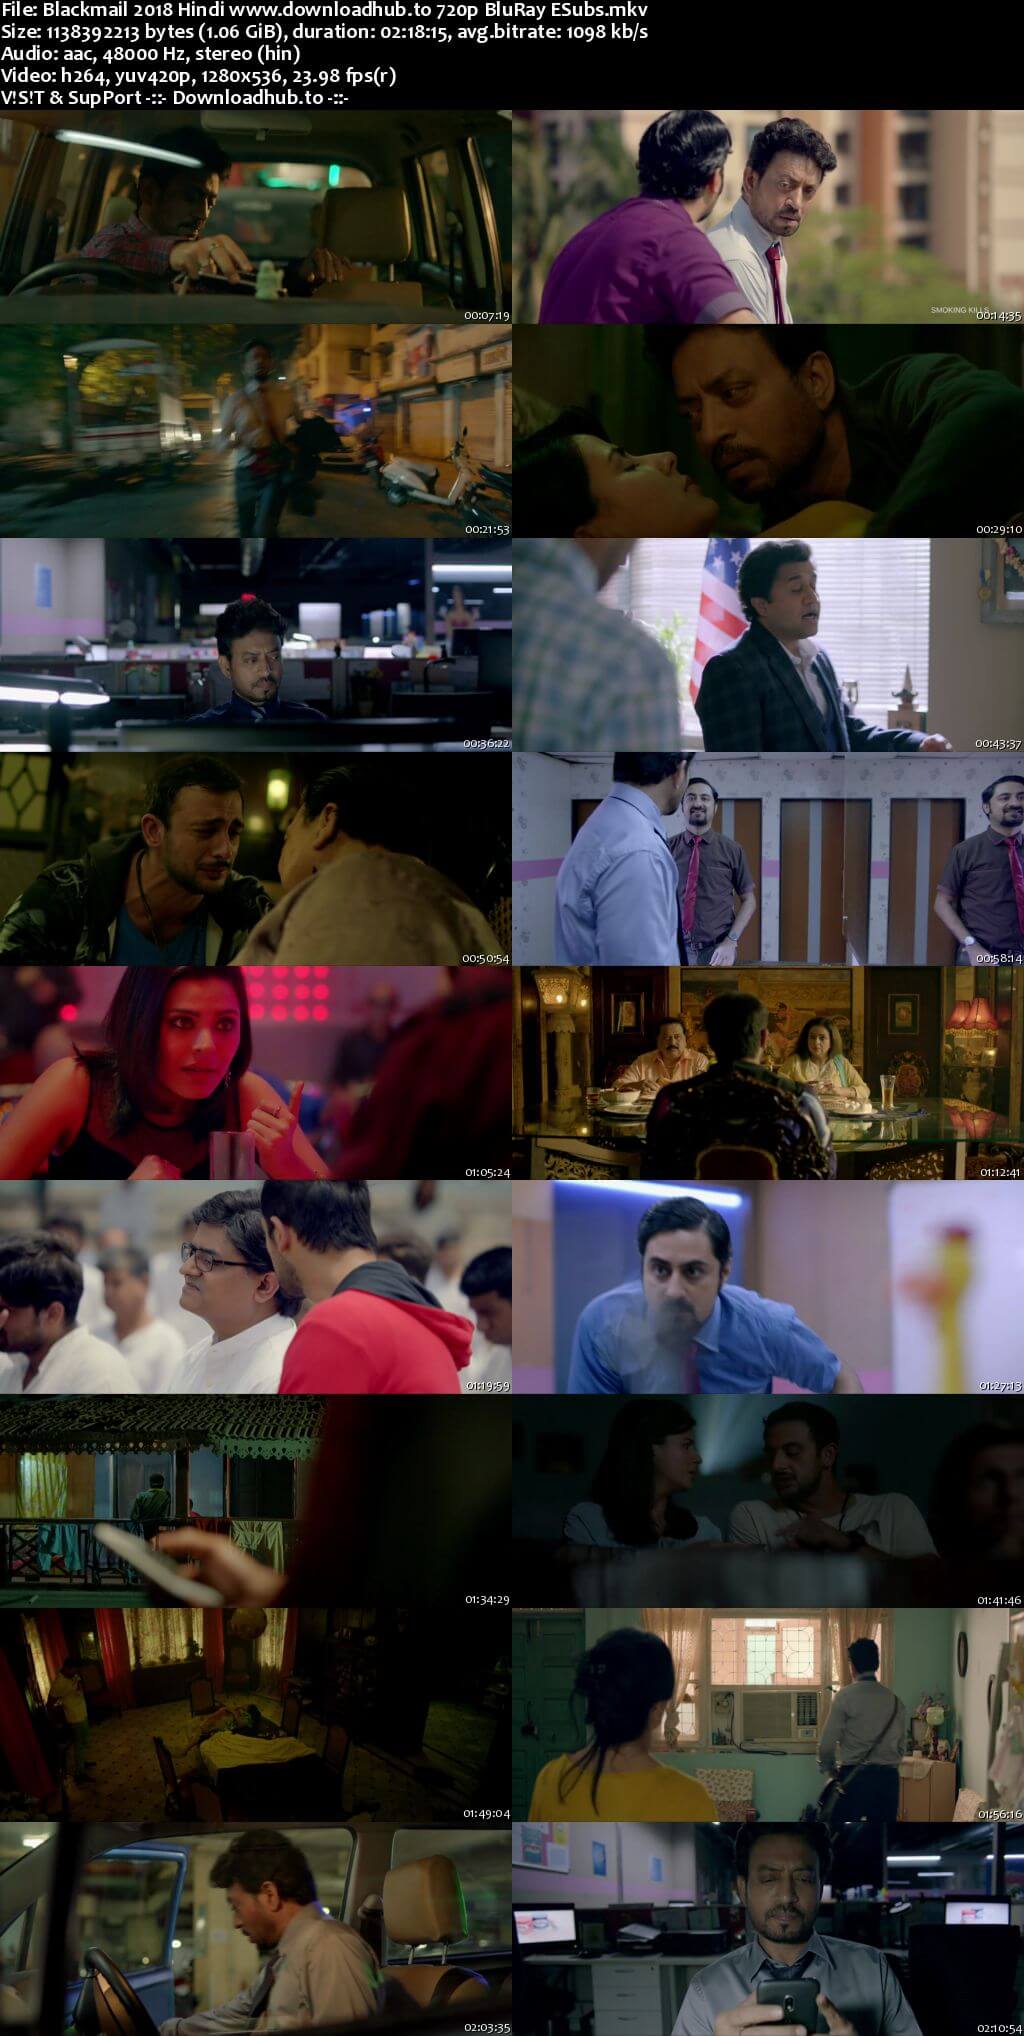 Blackmail 2018 Hindi 720p BluRay ESubs